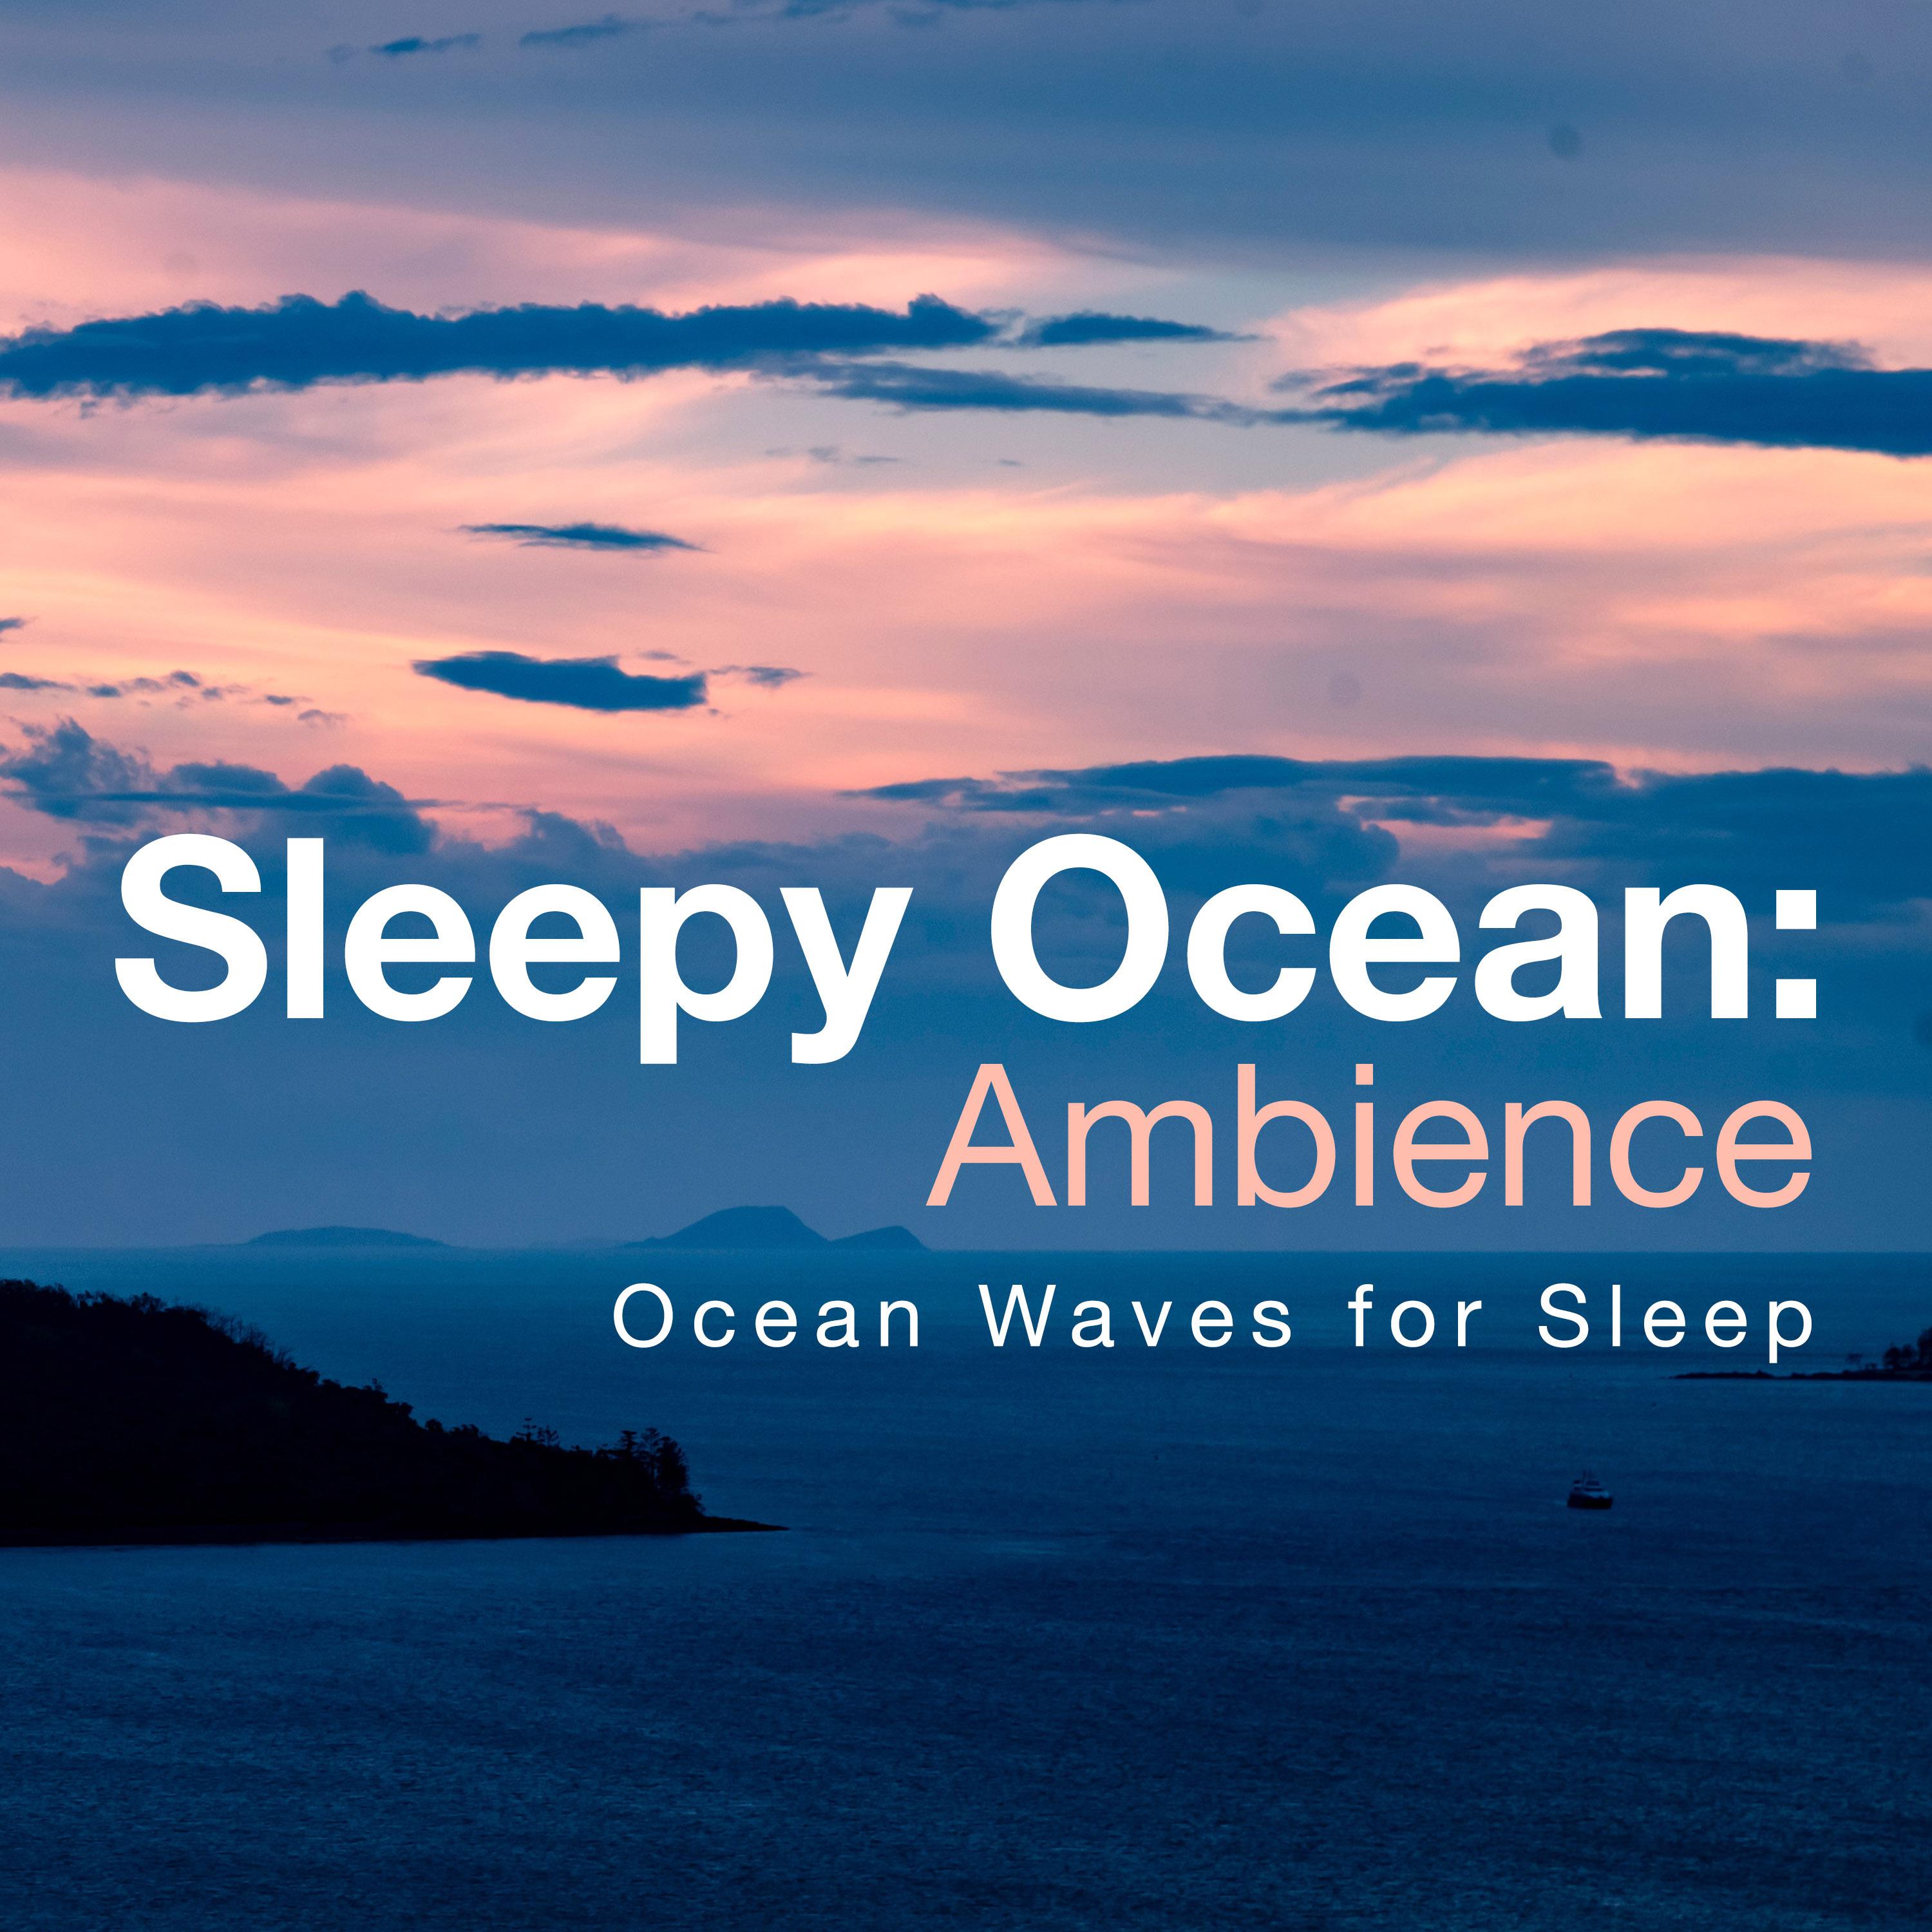 Sleepy Ocean: Ambience